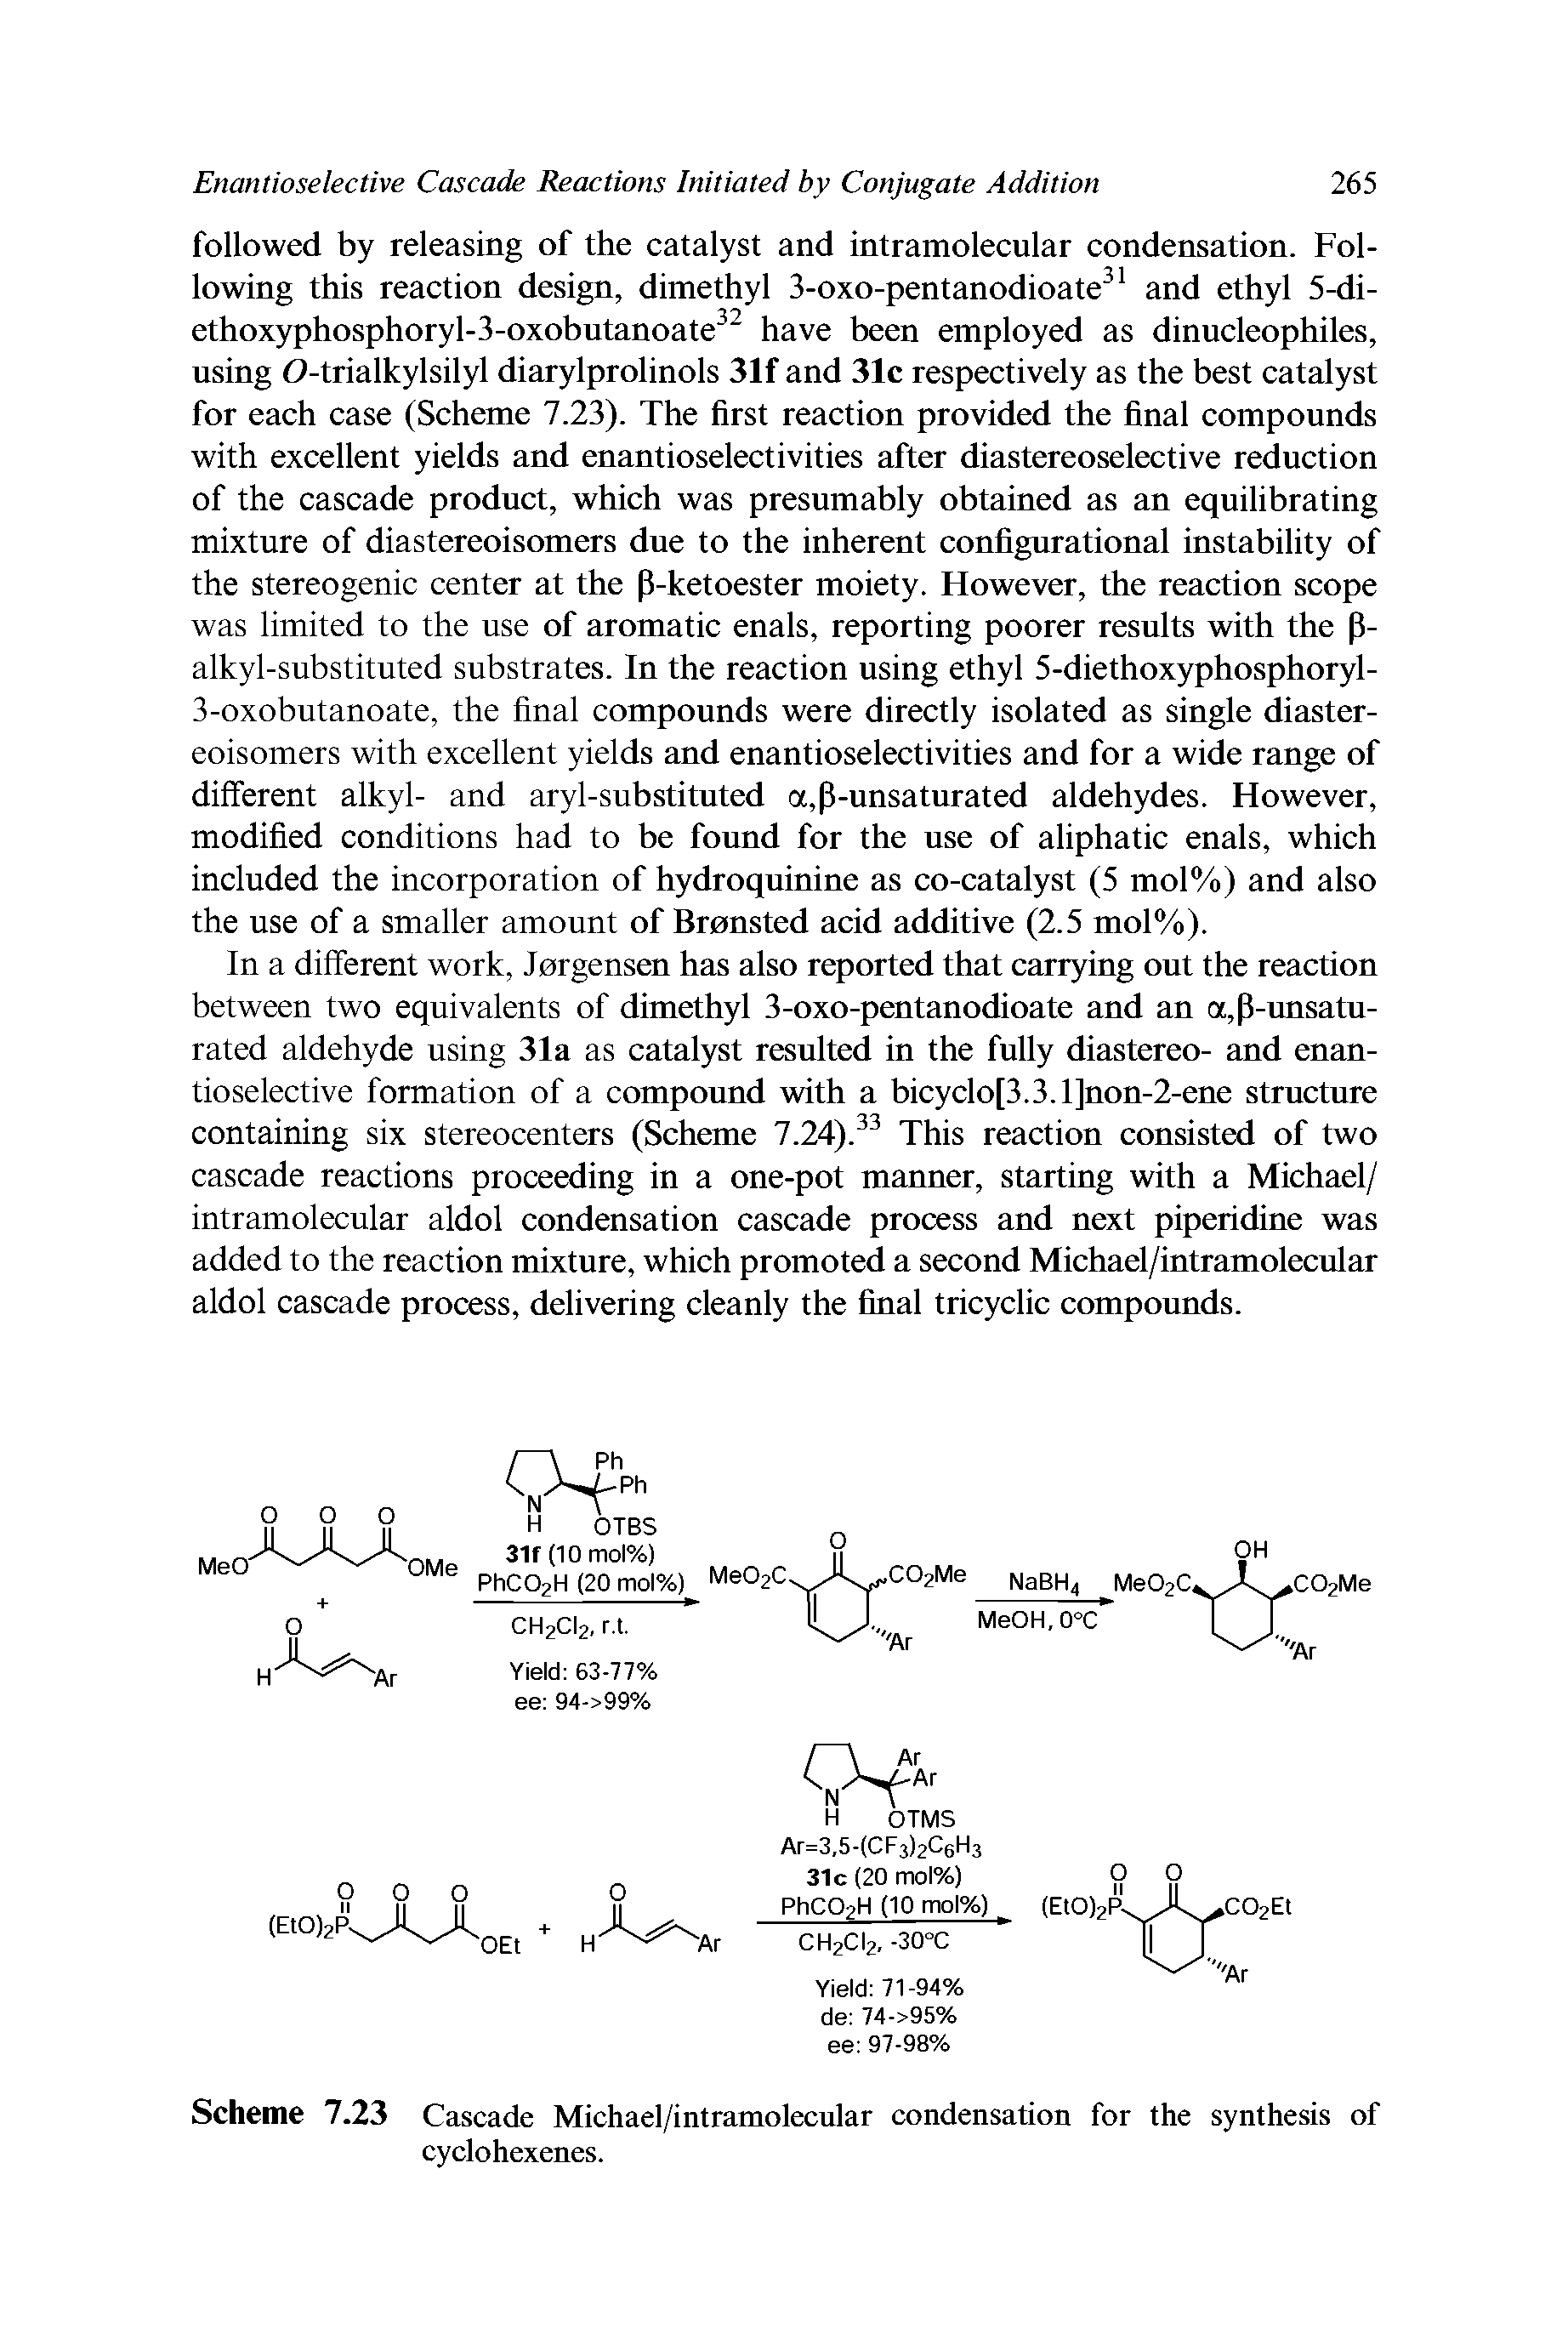 Scheme 7.23 Cascade Michael/intramolecular condensation for the synthesis of cyclohexenes.